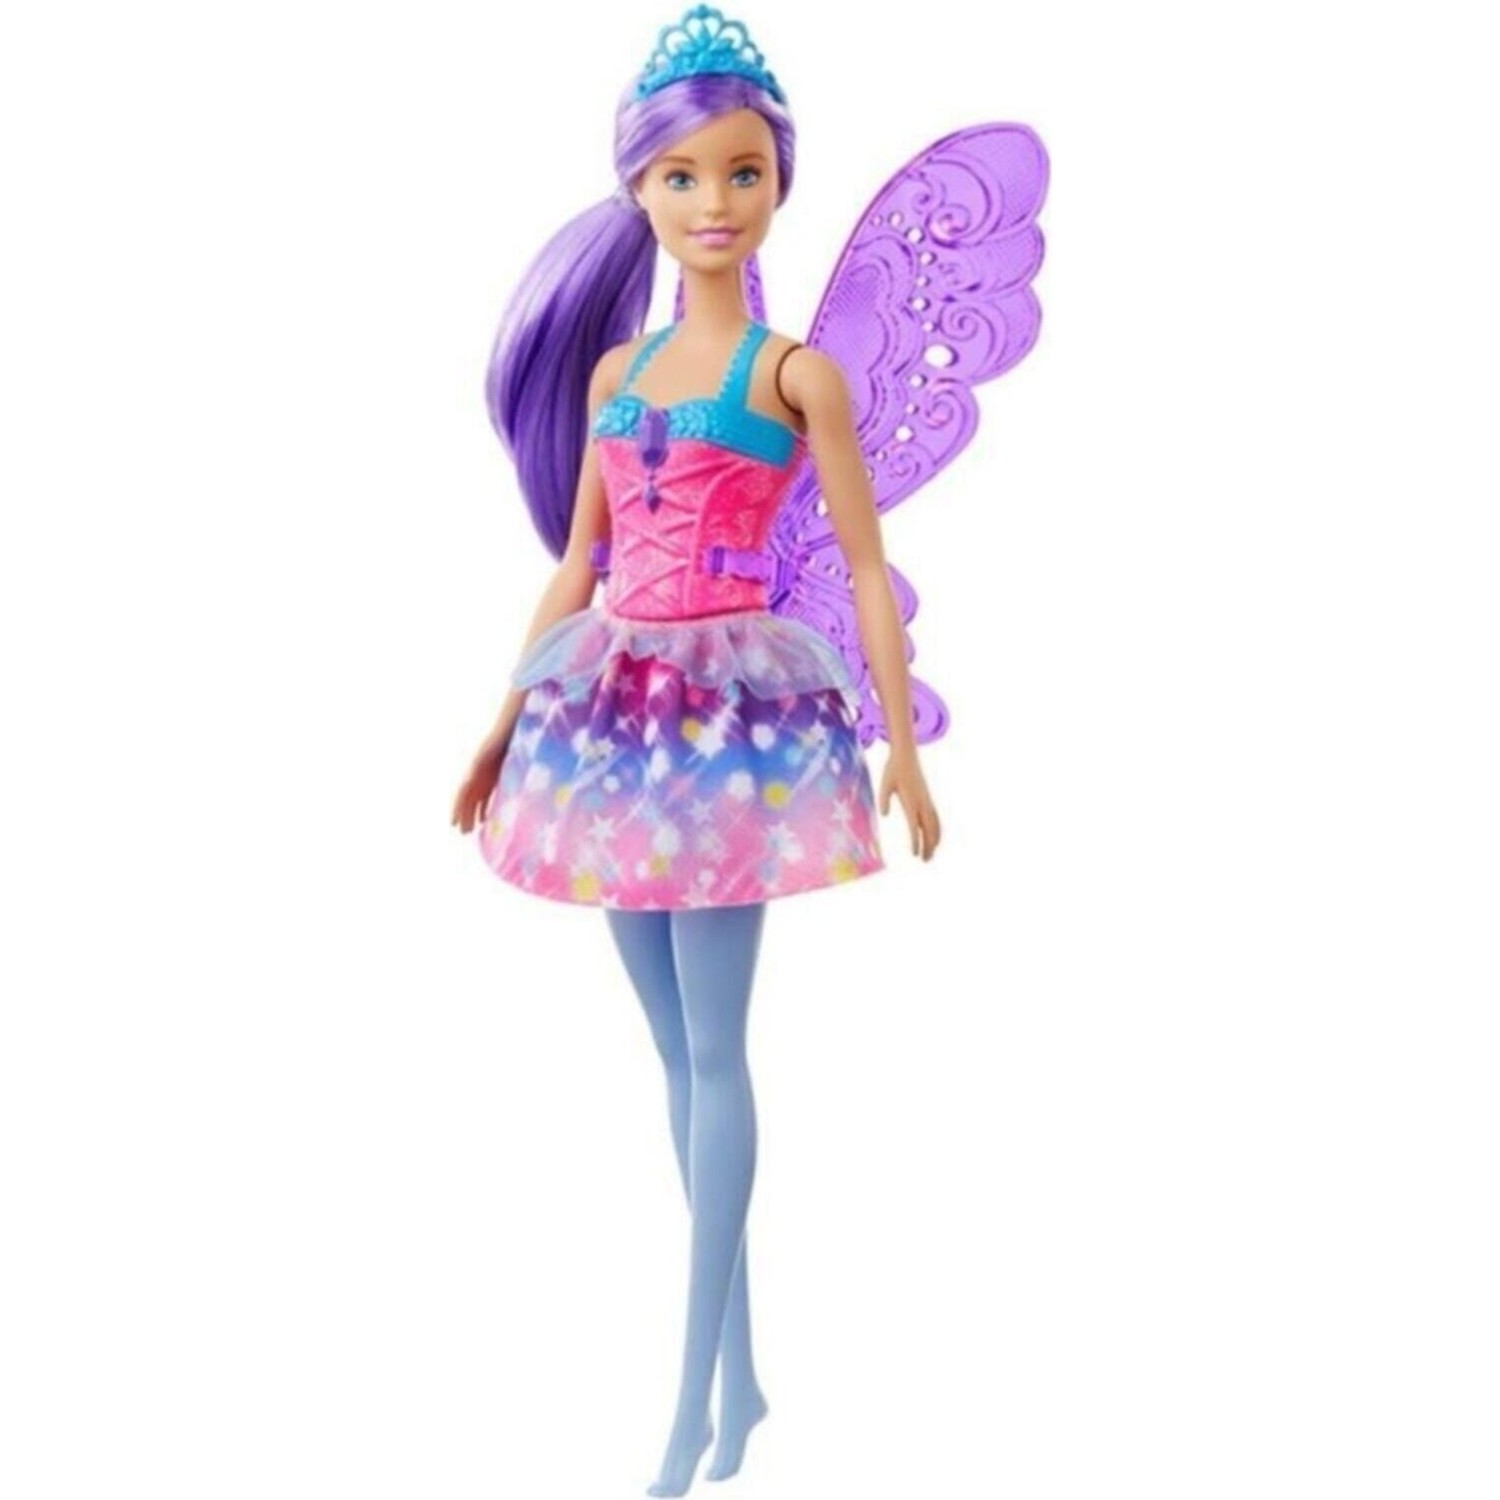 Куклы Barbie Dreamtopia Fairy Dolls красочное розовое платье, фиолетовые волосы GJK00 кукла mattel barbie кукла брюнетка в платье в спальне с кроватью grg86